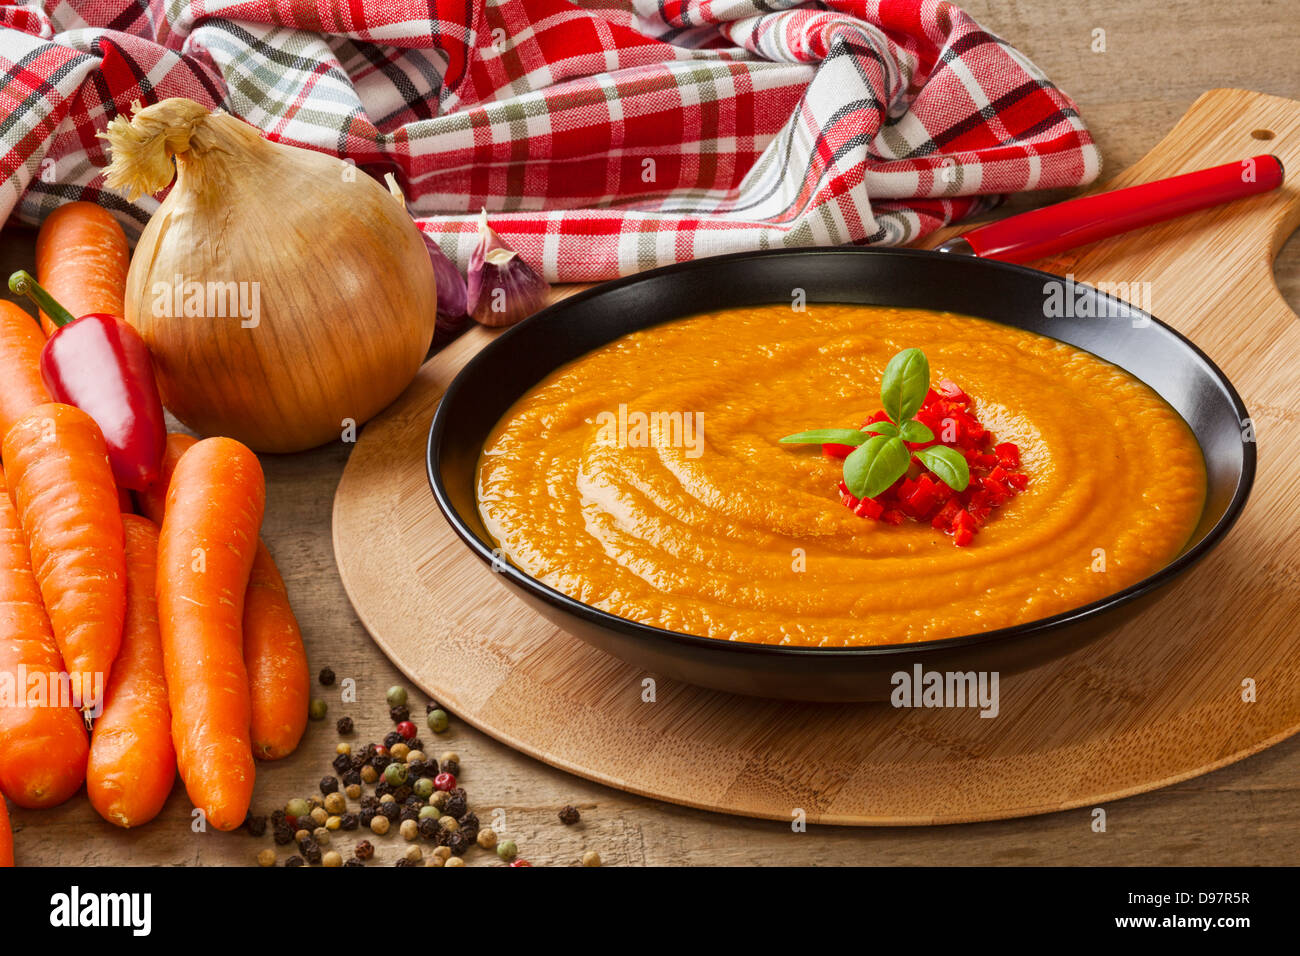 Arrosto di zuppa di carota - spesso arrosto zuppa di carota con i suoi ingredienti, carote, cipolle. il peperoncino e aglio. Foto Stock